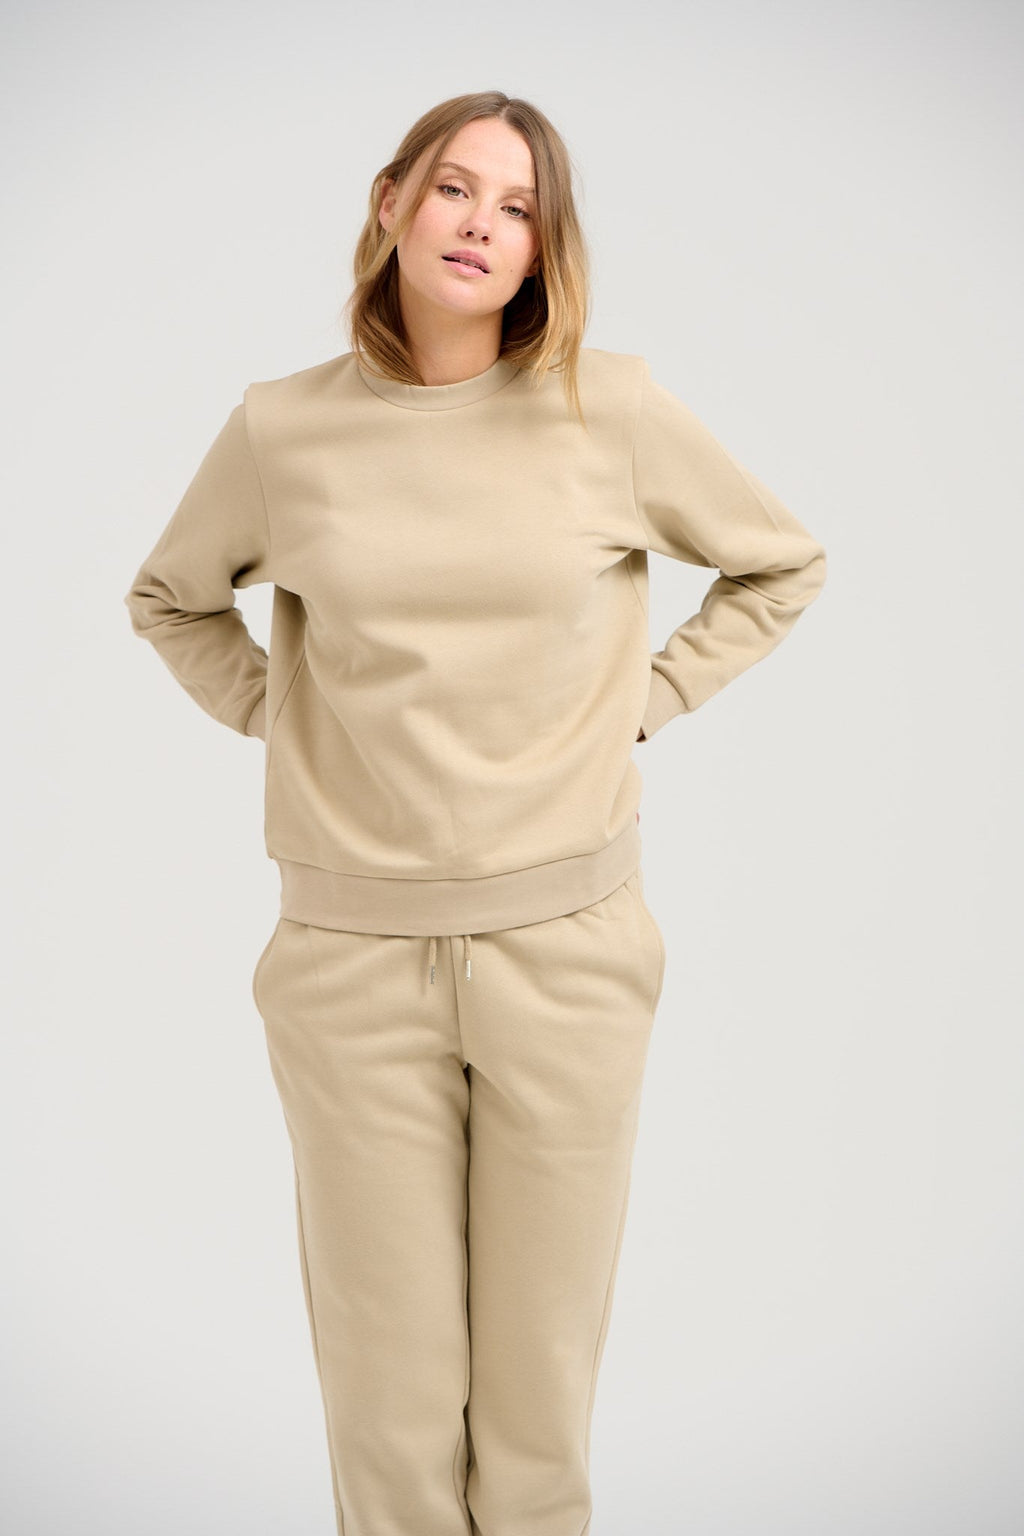 Basic Sweatsuit con cuello redacción (beige oscuro) - paquete de ofertas (mujeres)